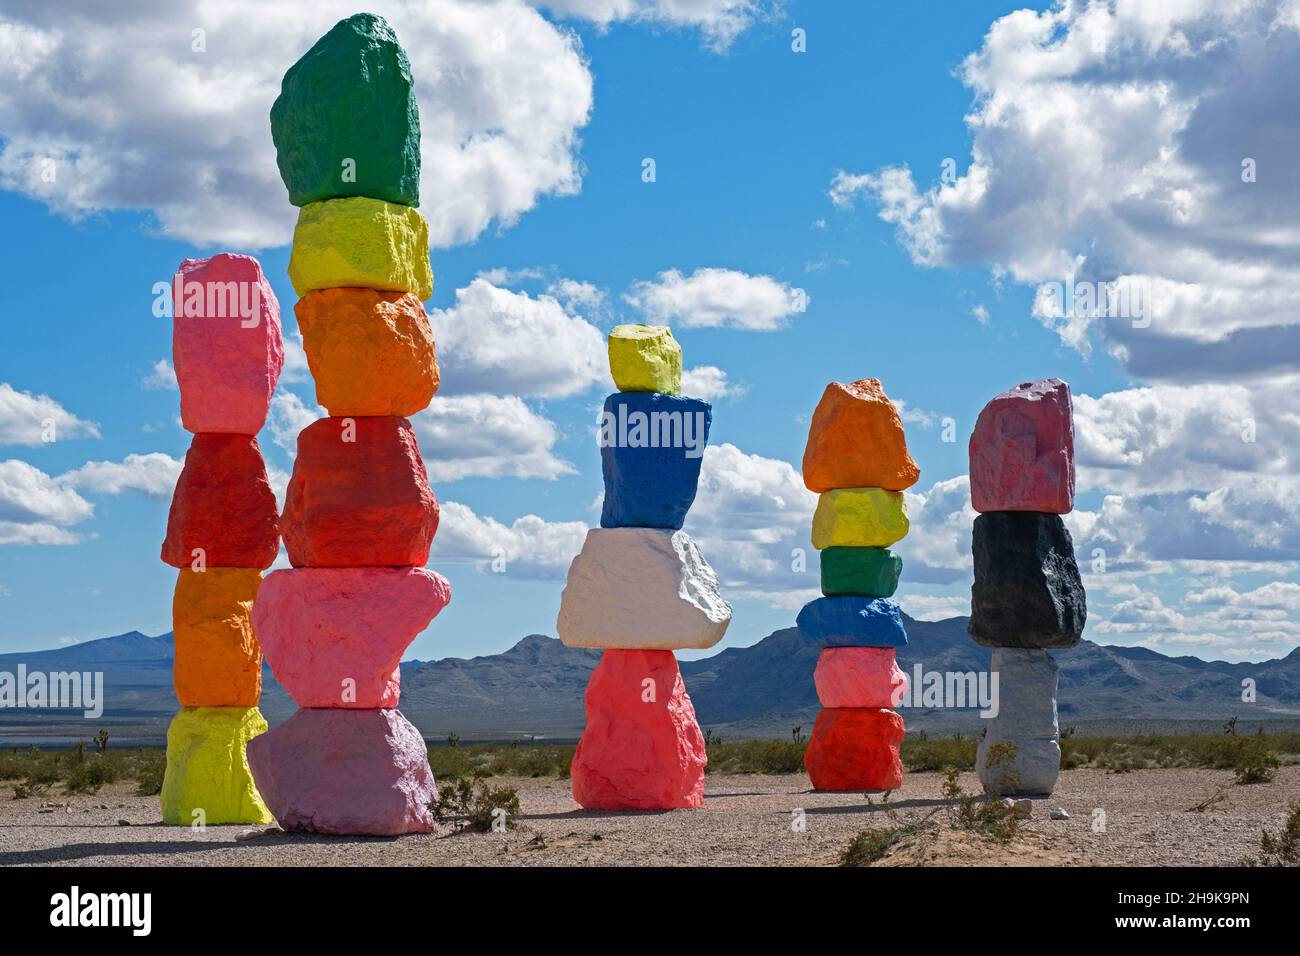 Derrotado compromiso Oferta Siete Montañas Mágicas / Siete Hermanas, instalación de arte hecha de rocas  coloridas y apiladas en el Valle de Ivanpah cerca de Las Vegas, Nevada,  Estados Unidos, Estados Unidos Fotografía de stock -